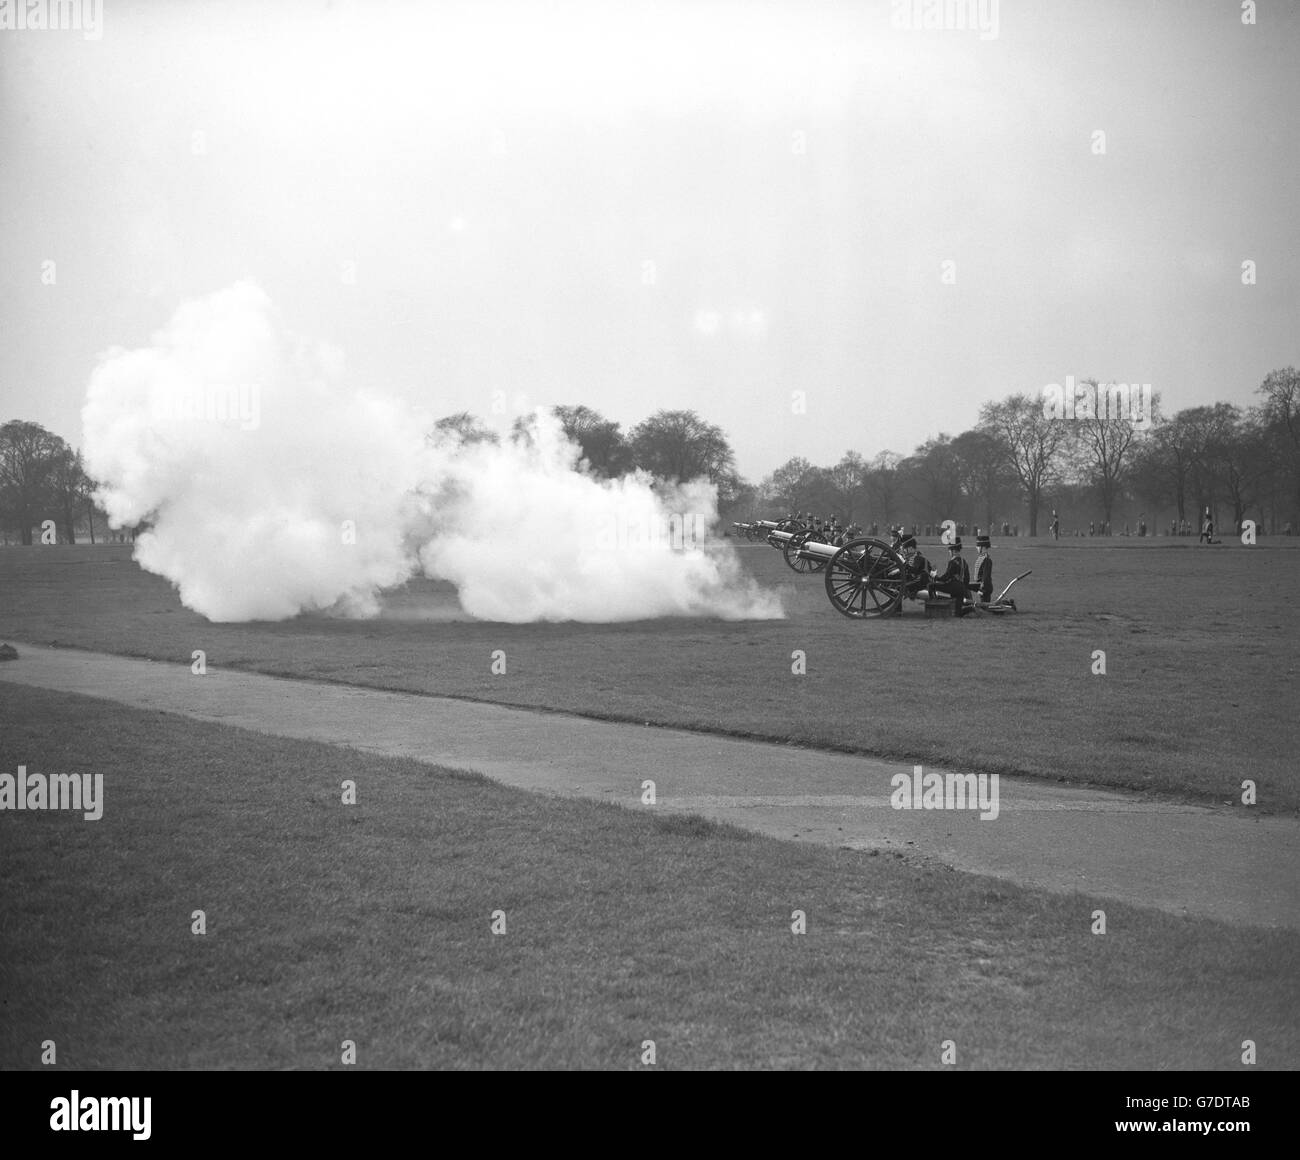 La truppa del Re Royal Horse Artillery spara 40 minuti di pistole in omaggio alla Regina Mary a Hyde Park, Londra. Il saluto è iniziato a mezzogiorno, mentre saluti simili sono stati licenziati in altre stazioni di saluto in patria e all'estero. Foto Stock